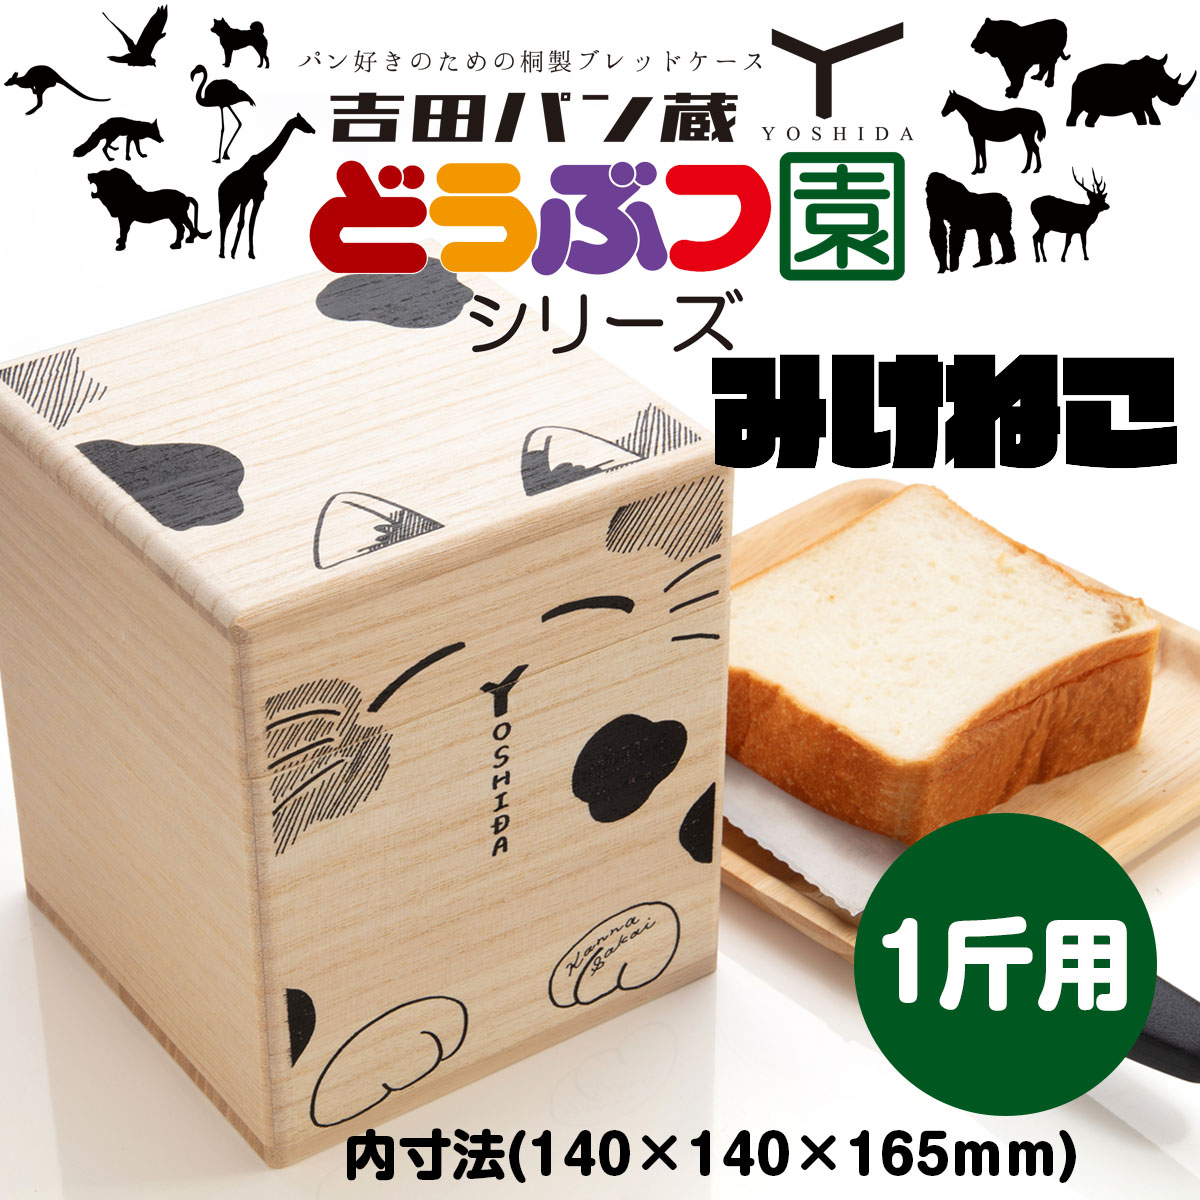 パン好きのための桐製ブレッドケース 吉田パン蔵 1斤用【みけねこ】 FZ22-500